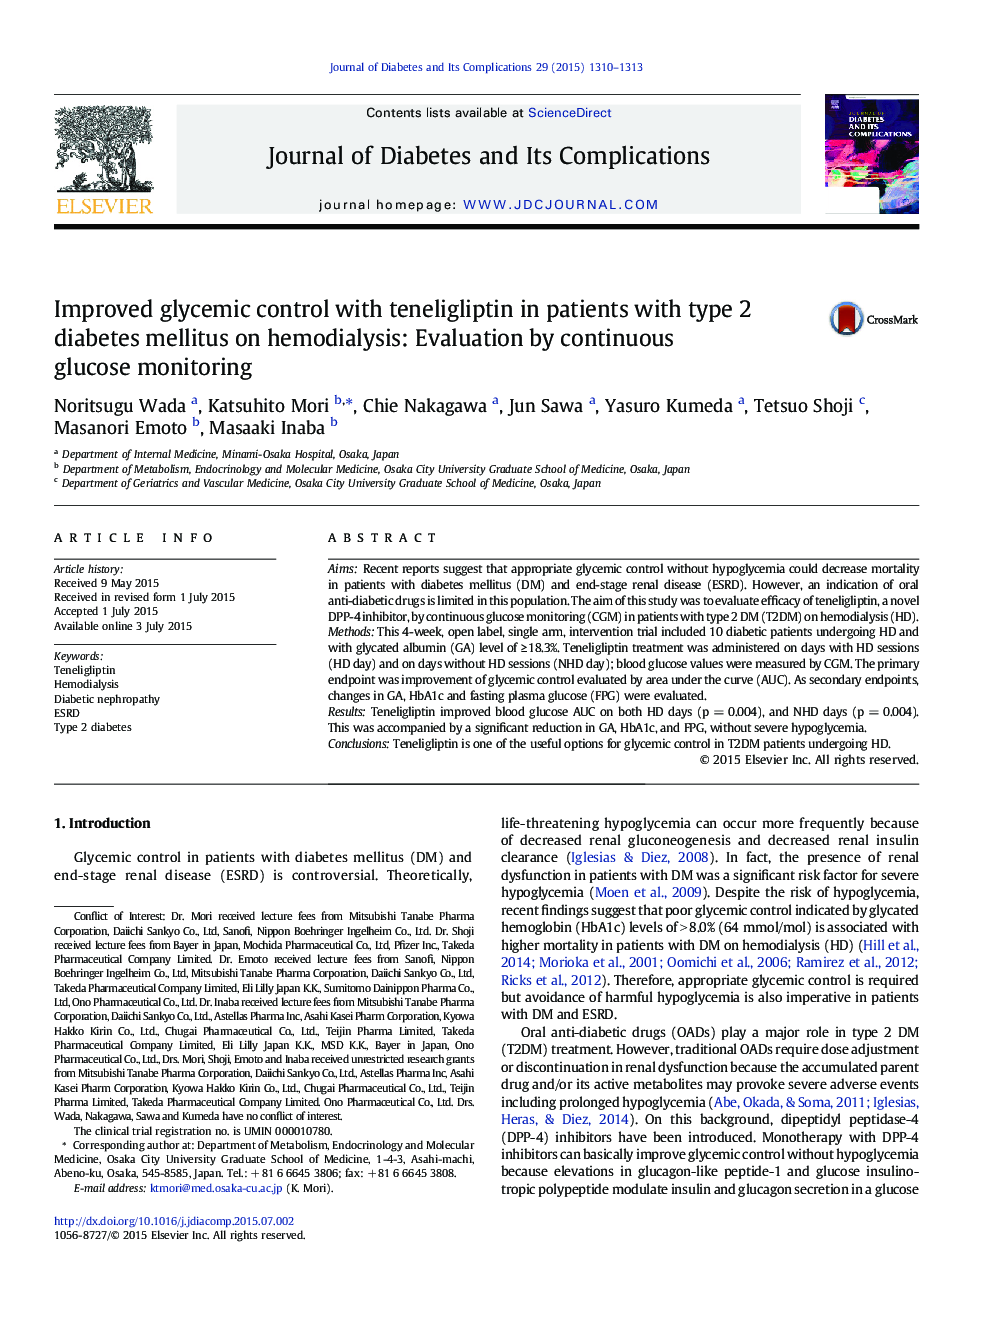 بهبود کنترل گلیسمی همراه با دهلیگلیپتین در بیماران مبتلا به دیابت نوع 2 بر روی همودیالیز: ارزیابی با پیگیری مداوم گلوکز 